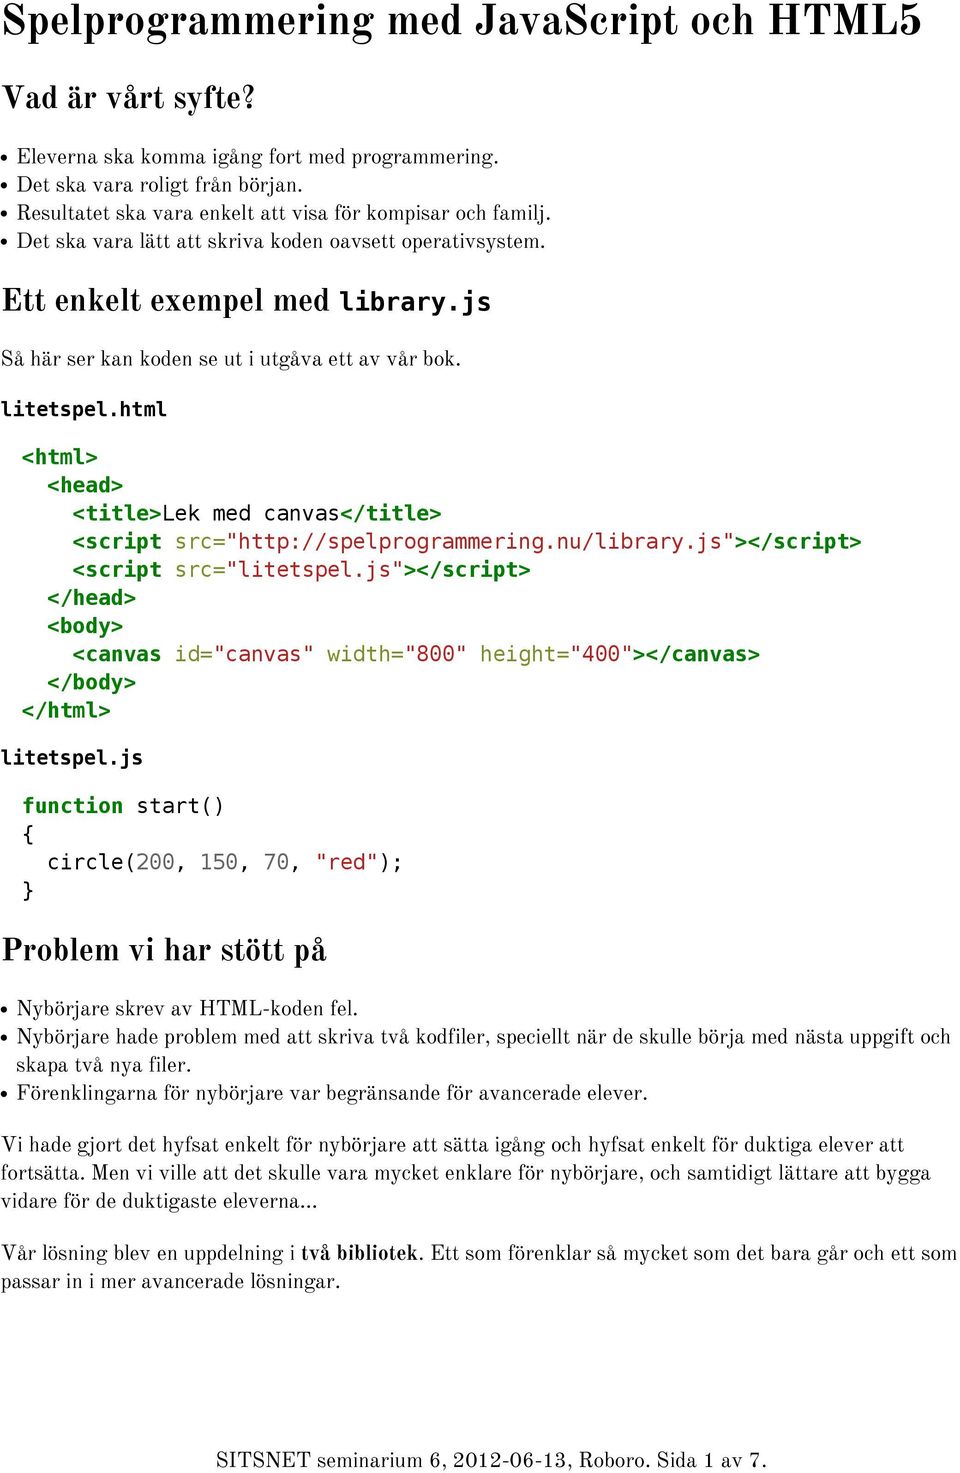 js Så här ser kan koden se ut i utgåva ett av vår bok. litetspel.html <html> <head> <title>lek med canvas</title> <script src="http://spelprogrammering.nu/library.js"> <script src="litetspel.